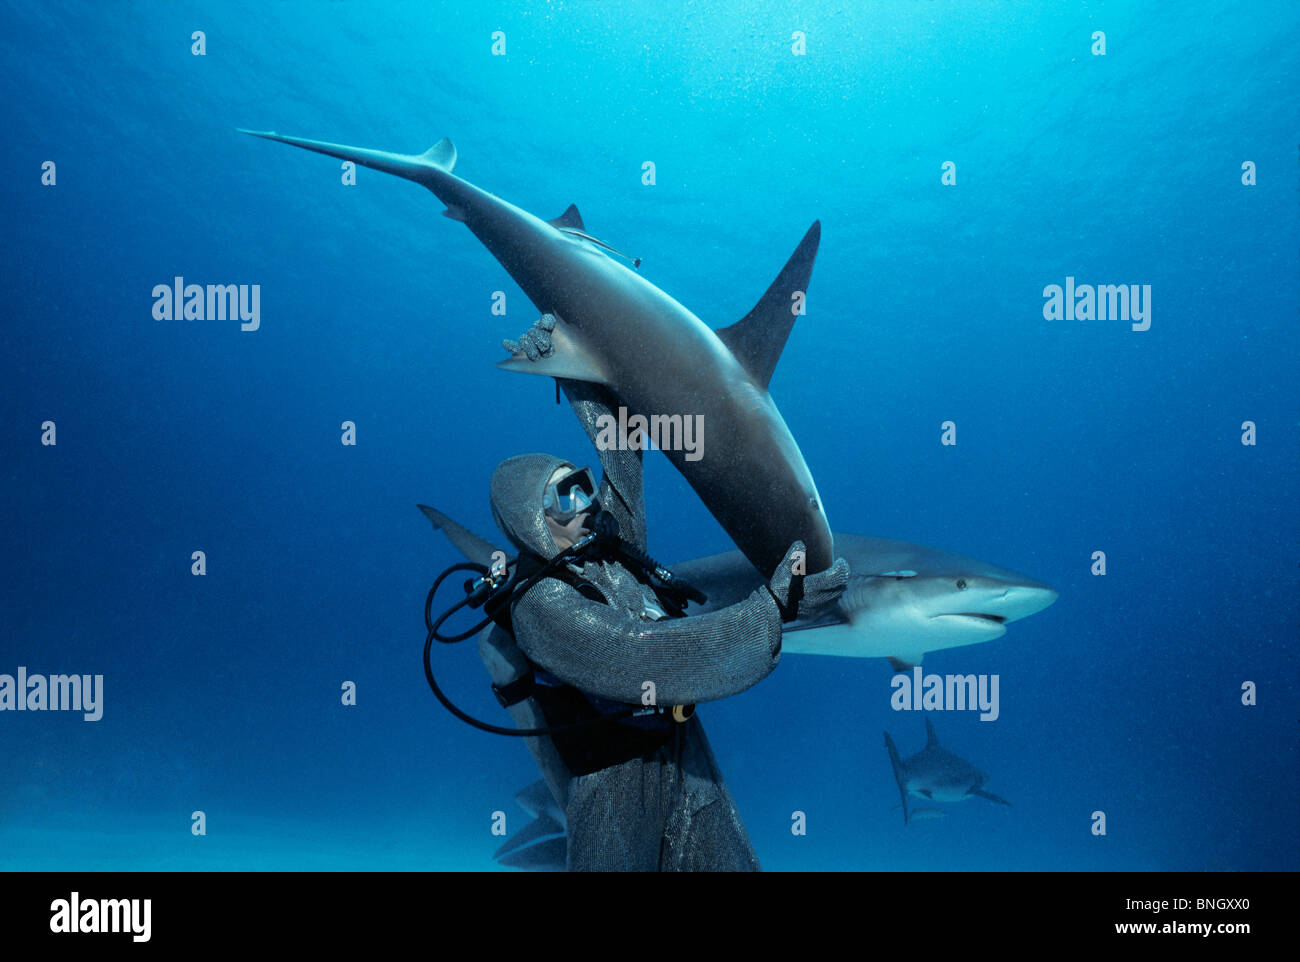 Karibischen Riffhai (Carcharhinus Perezi) in hypnotische Trance von Hai Handler, Bahamas - Karibik aufgehoben wird. Stockfoto